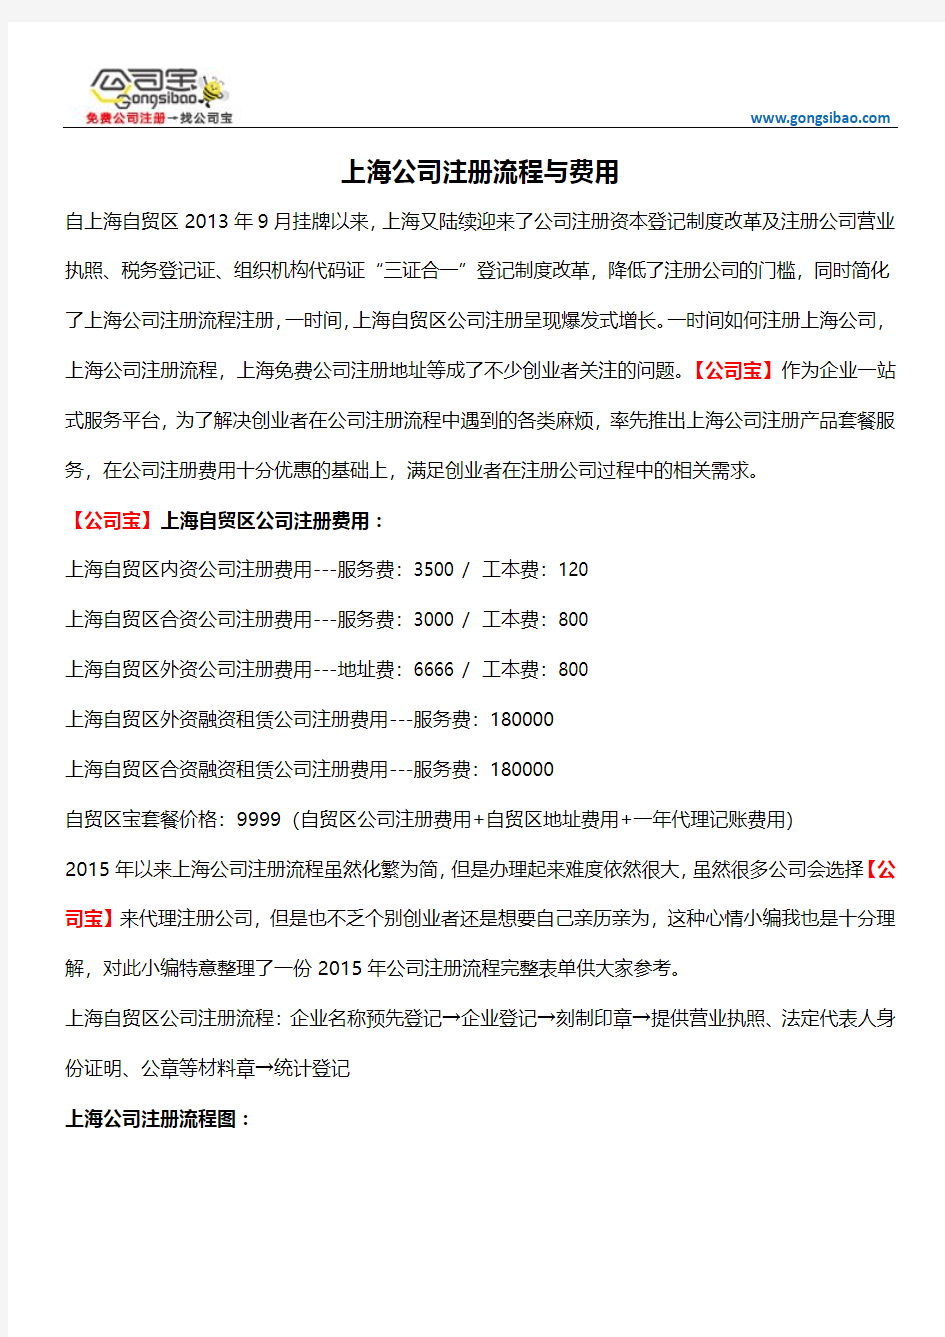 上海公司注册流程与费用